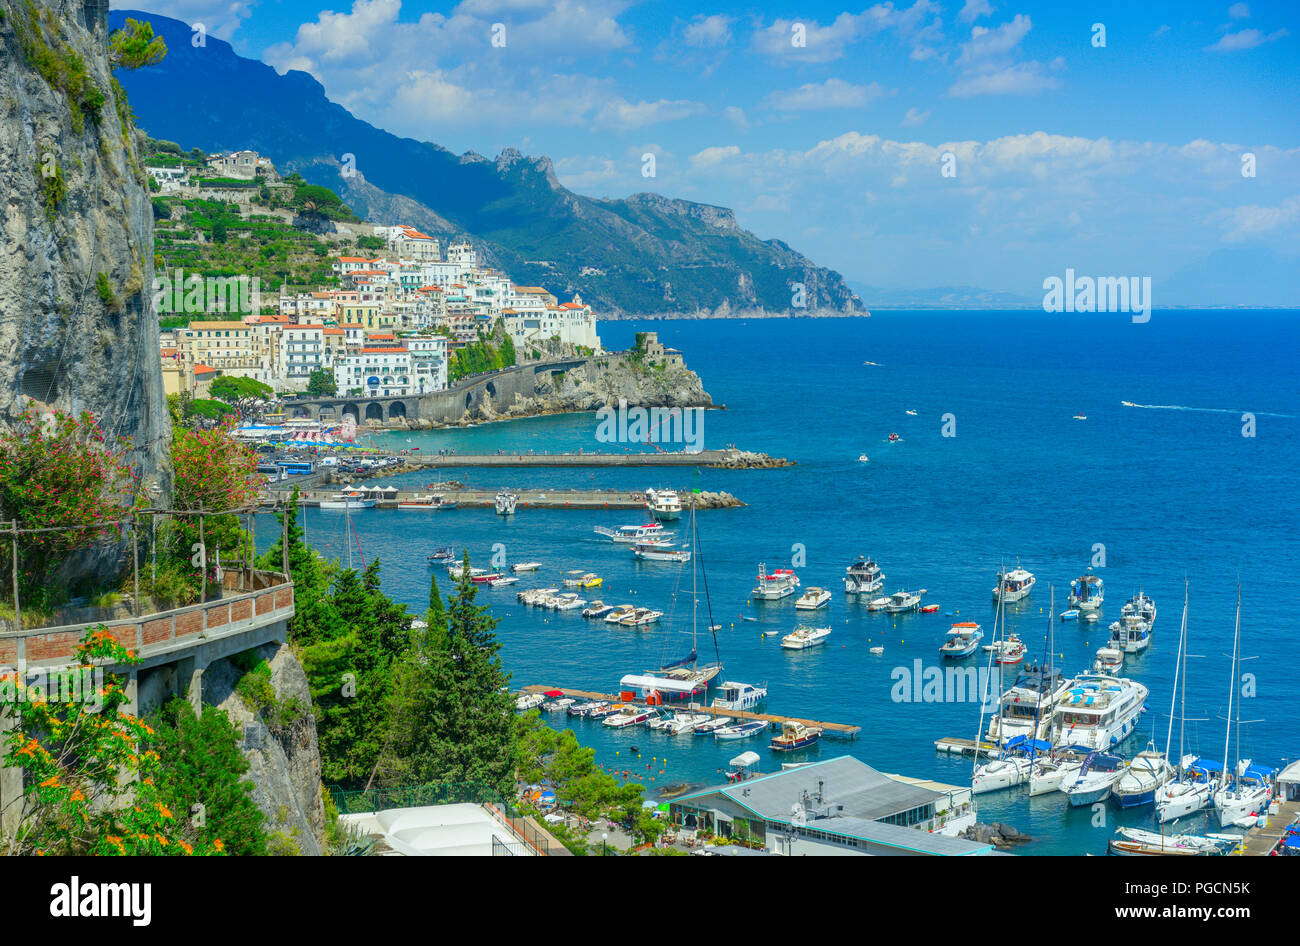 La città di Amalfi sulla Costiera Amalfitana in Campania, costruito sul lato della scogliera in stile tipico per la zona Foto Stock